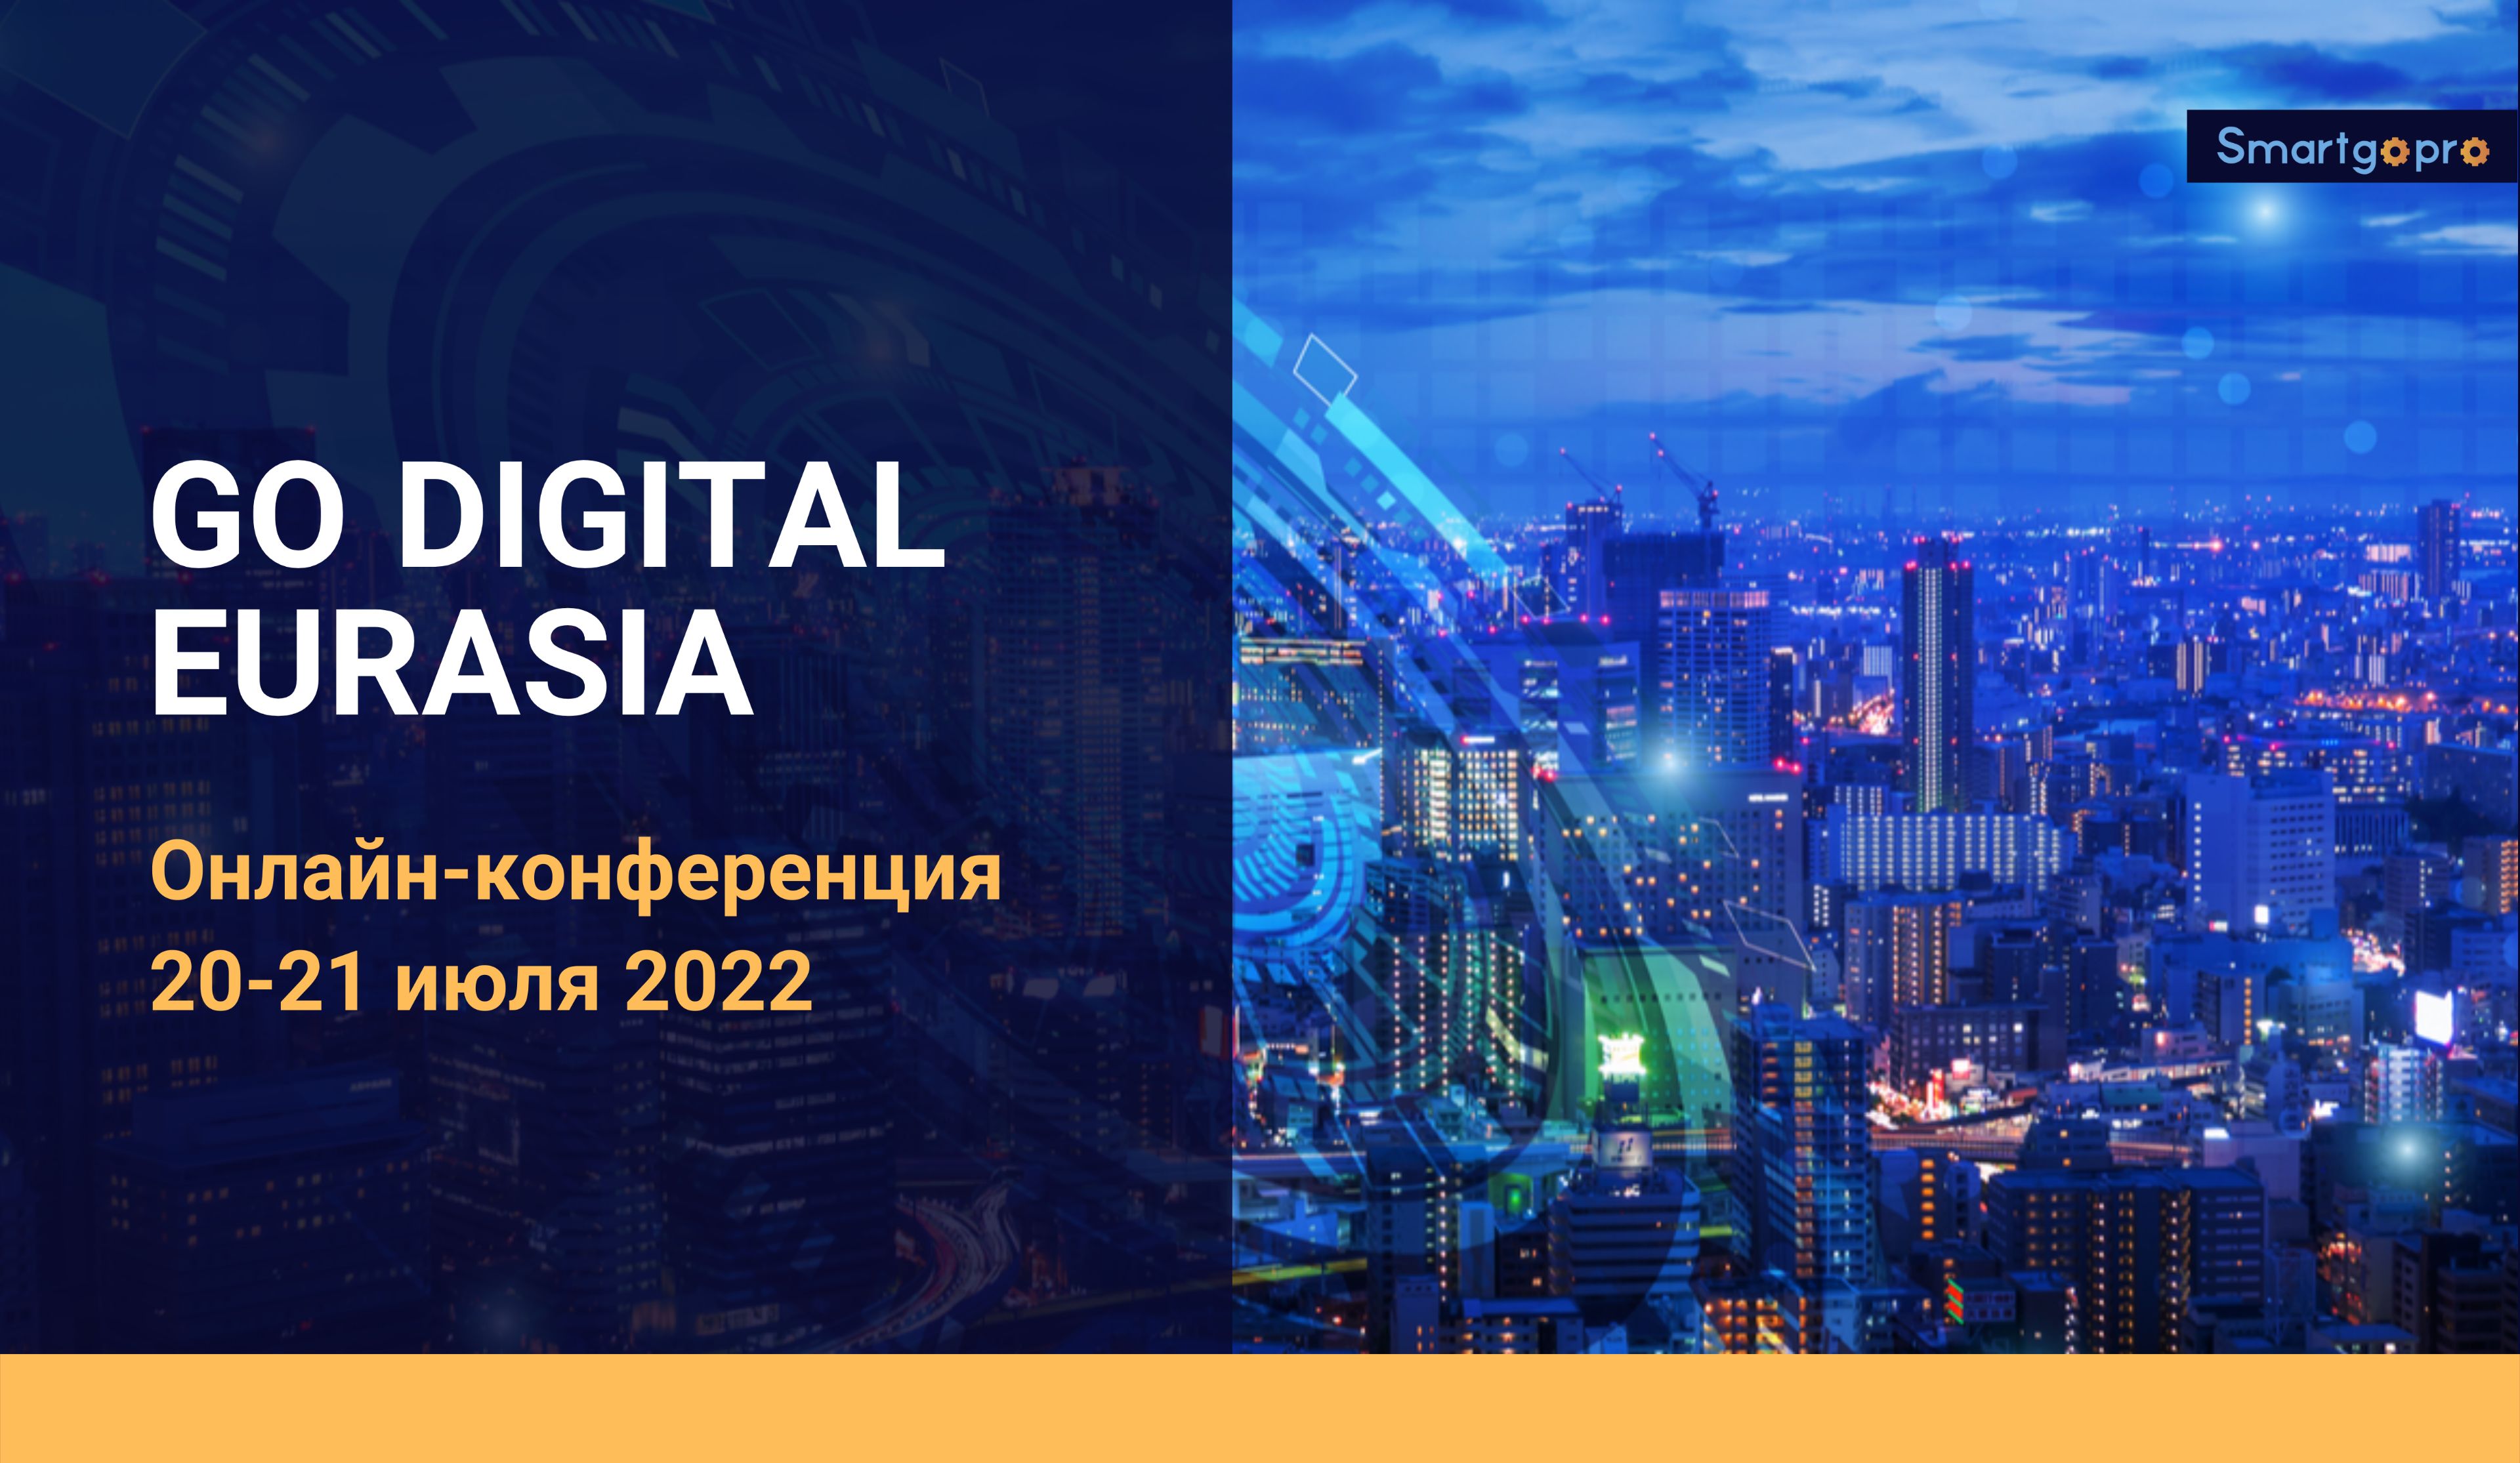 Опыт компании «Азия Цемент» в сфере цифровизации бизнес-процессов стал одной из тем на международной онлайн-конференции 